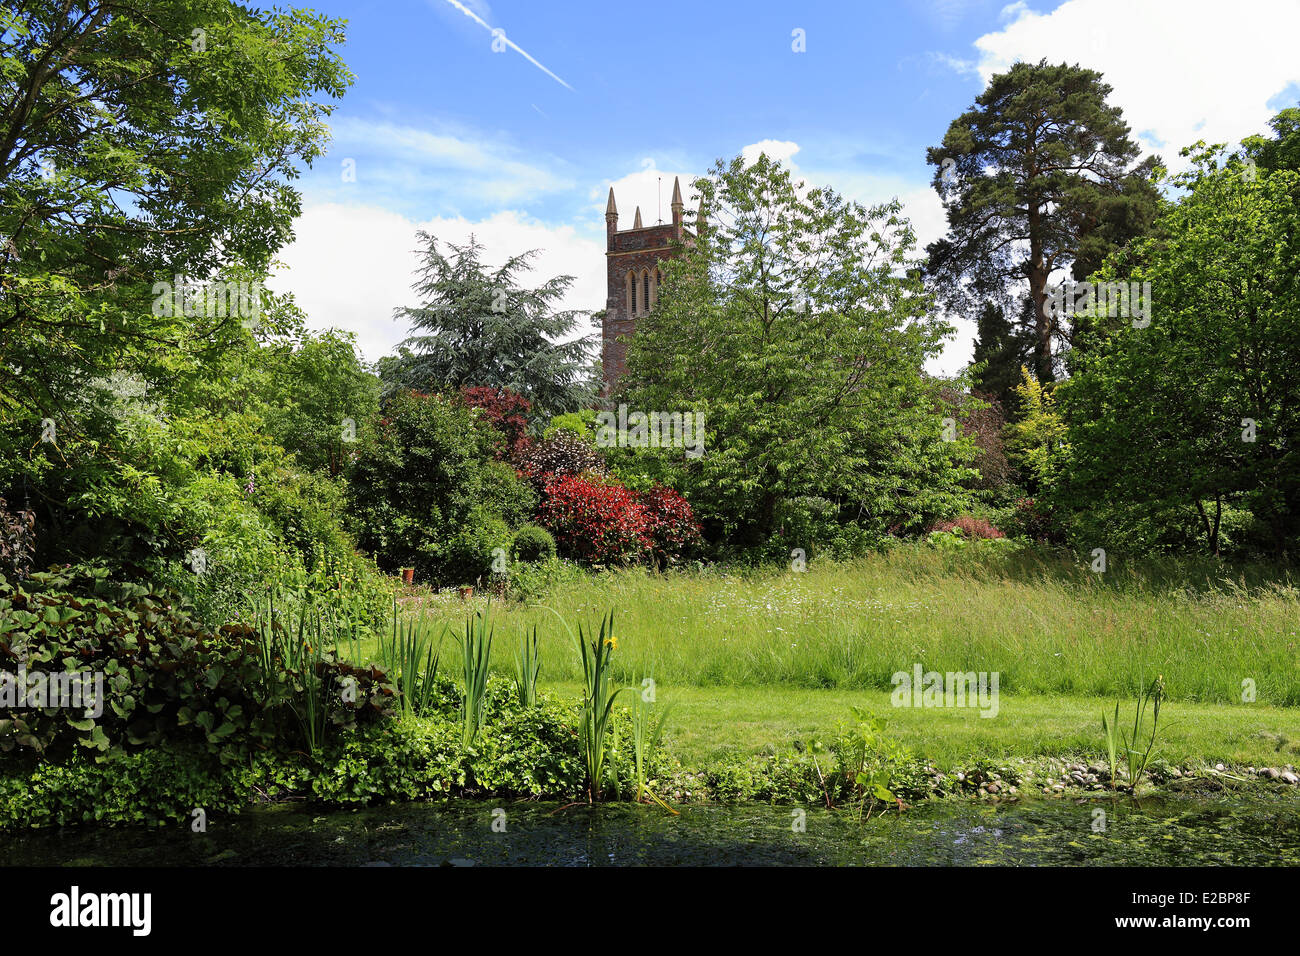 Iglesia del pueblo inglés y la Torre vistos a través de un estanque en un wildflower garden Foto de stock